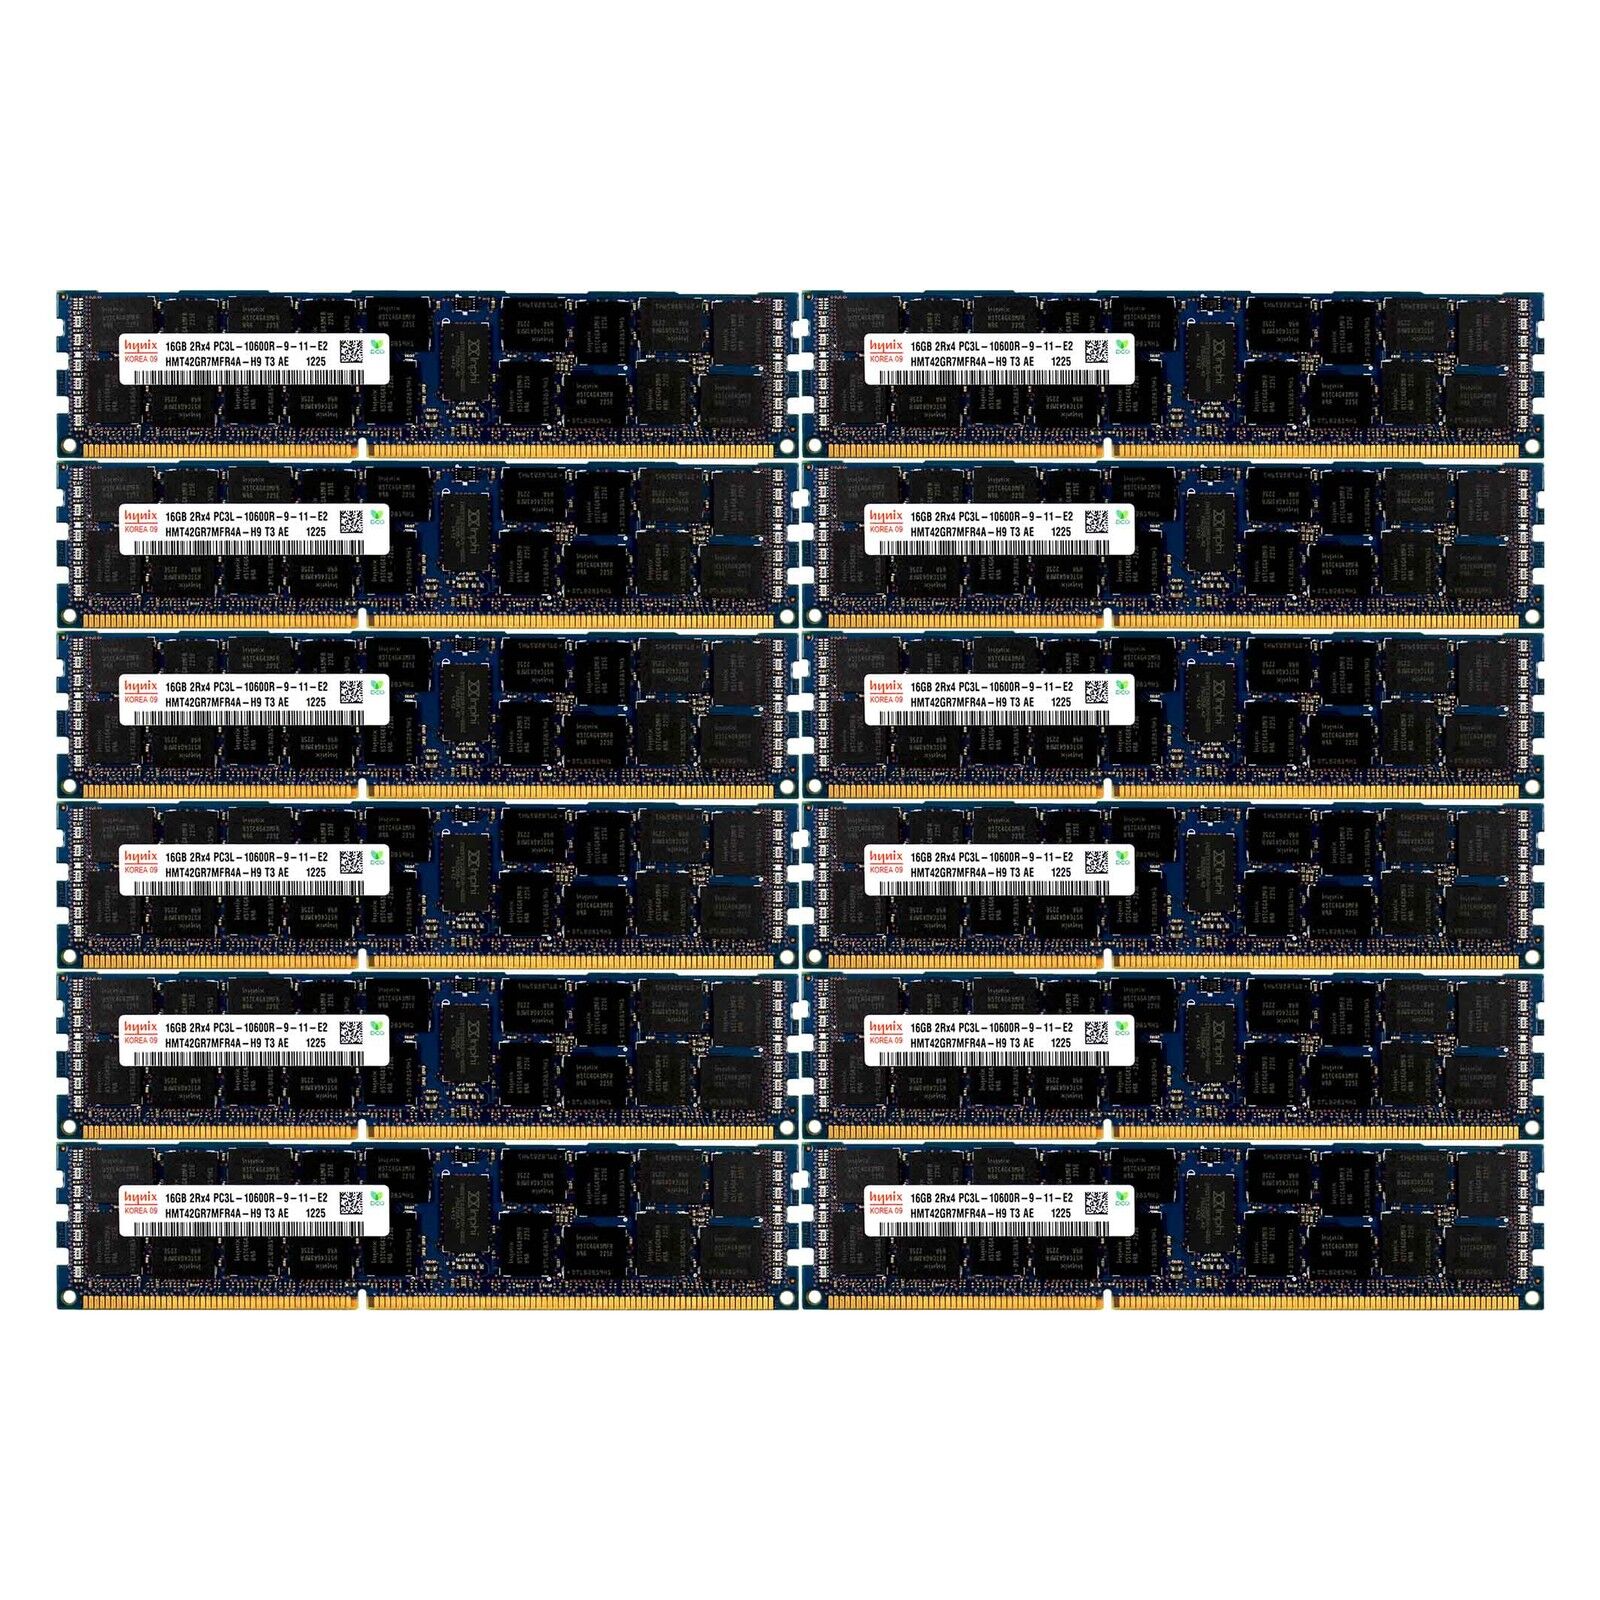 PC3L-10600 12x16G HP Proliant BL680C DL165 DL360 DL380 DL385 DL580 G7 Memory Ram